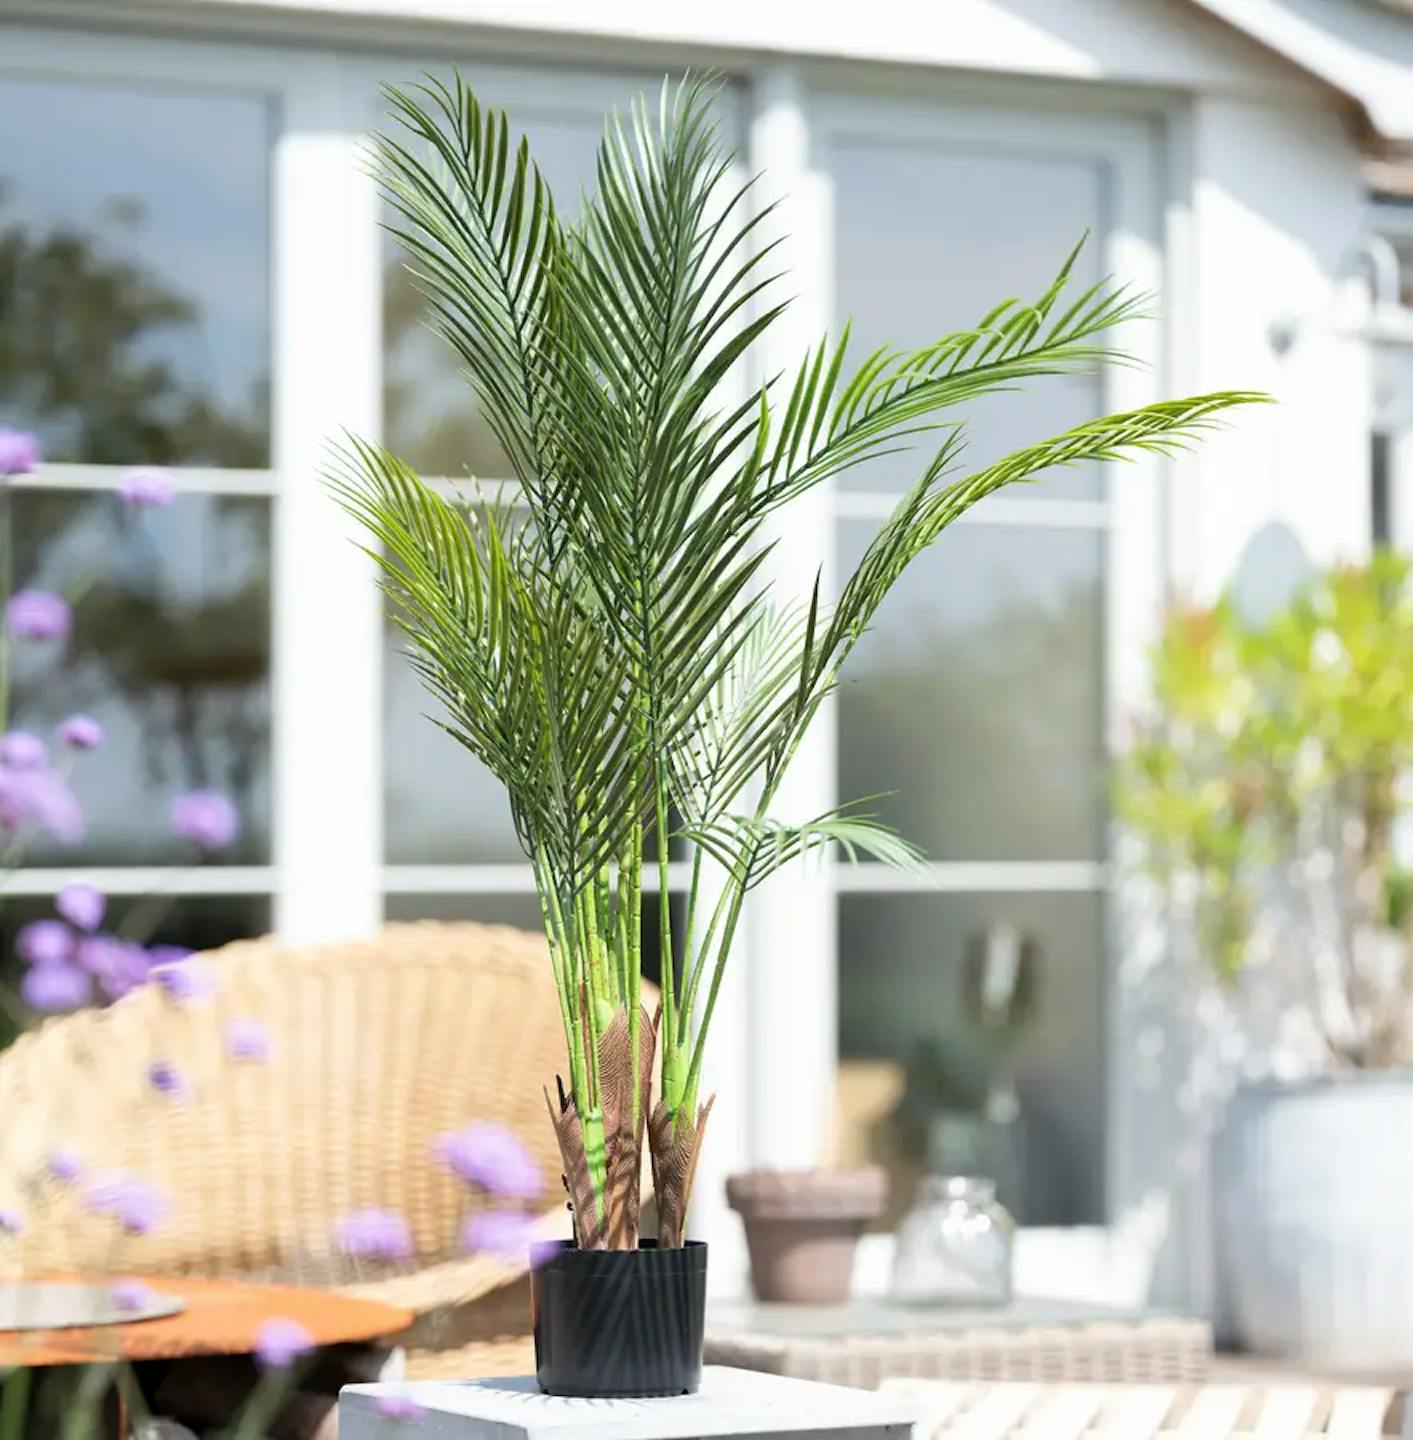 A areca palm on a table